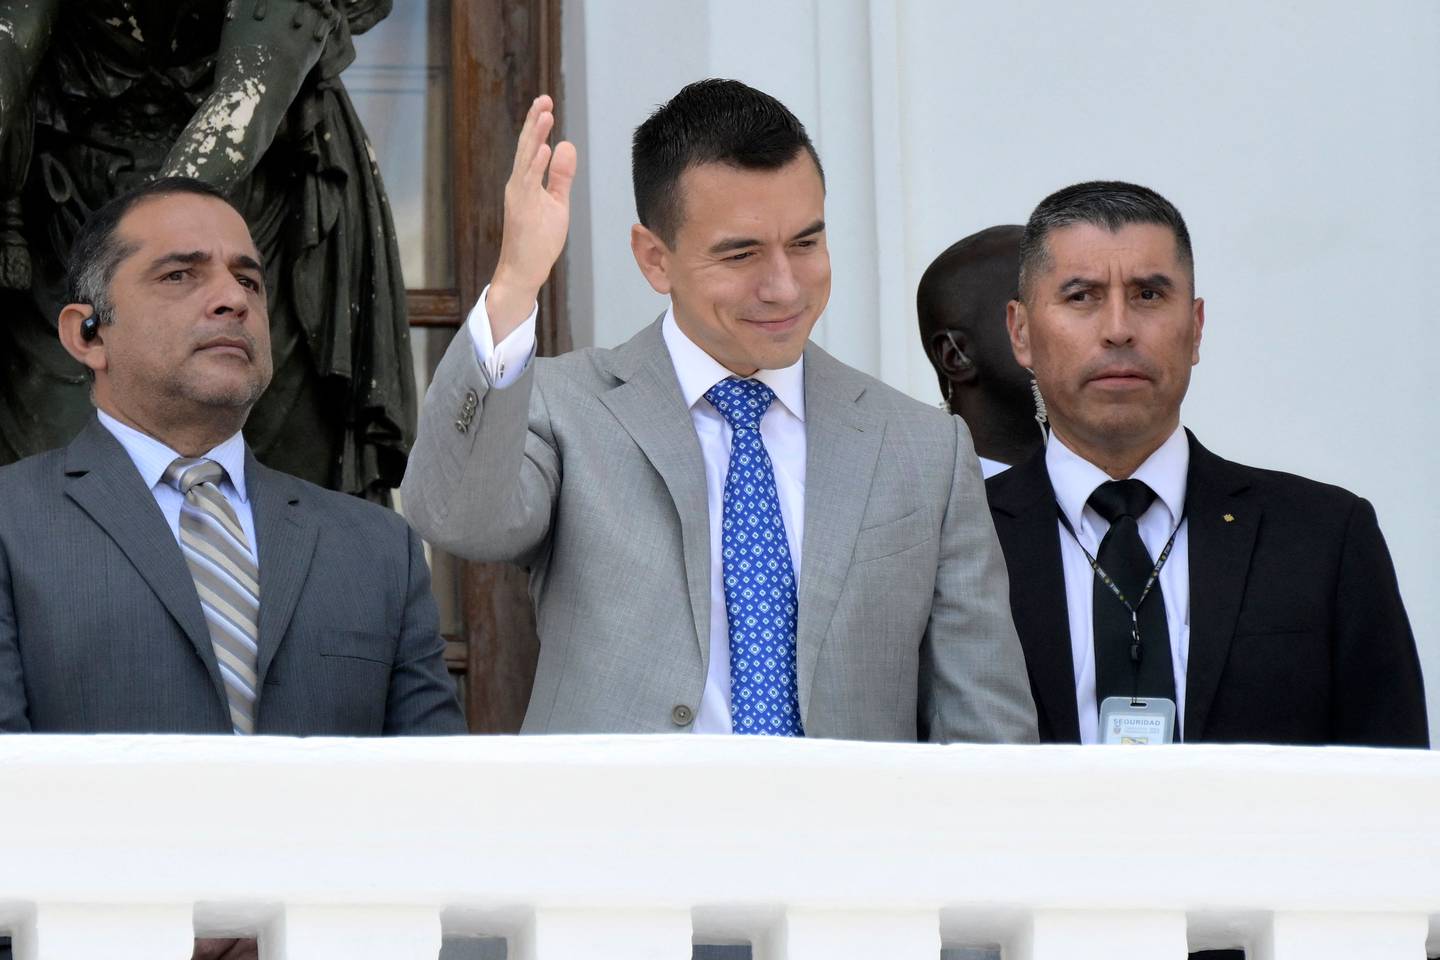 El presidente electo, Daniel Novoa, toma a un Ecuador que afronta una guerra por el poder del narcotráfico entre numerosas bandas vinculadas con carteles mexicanos y colombianos